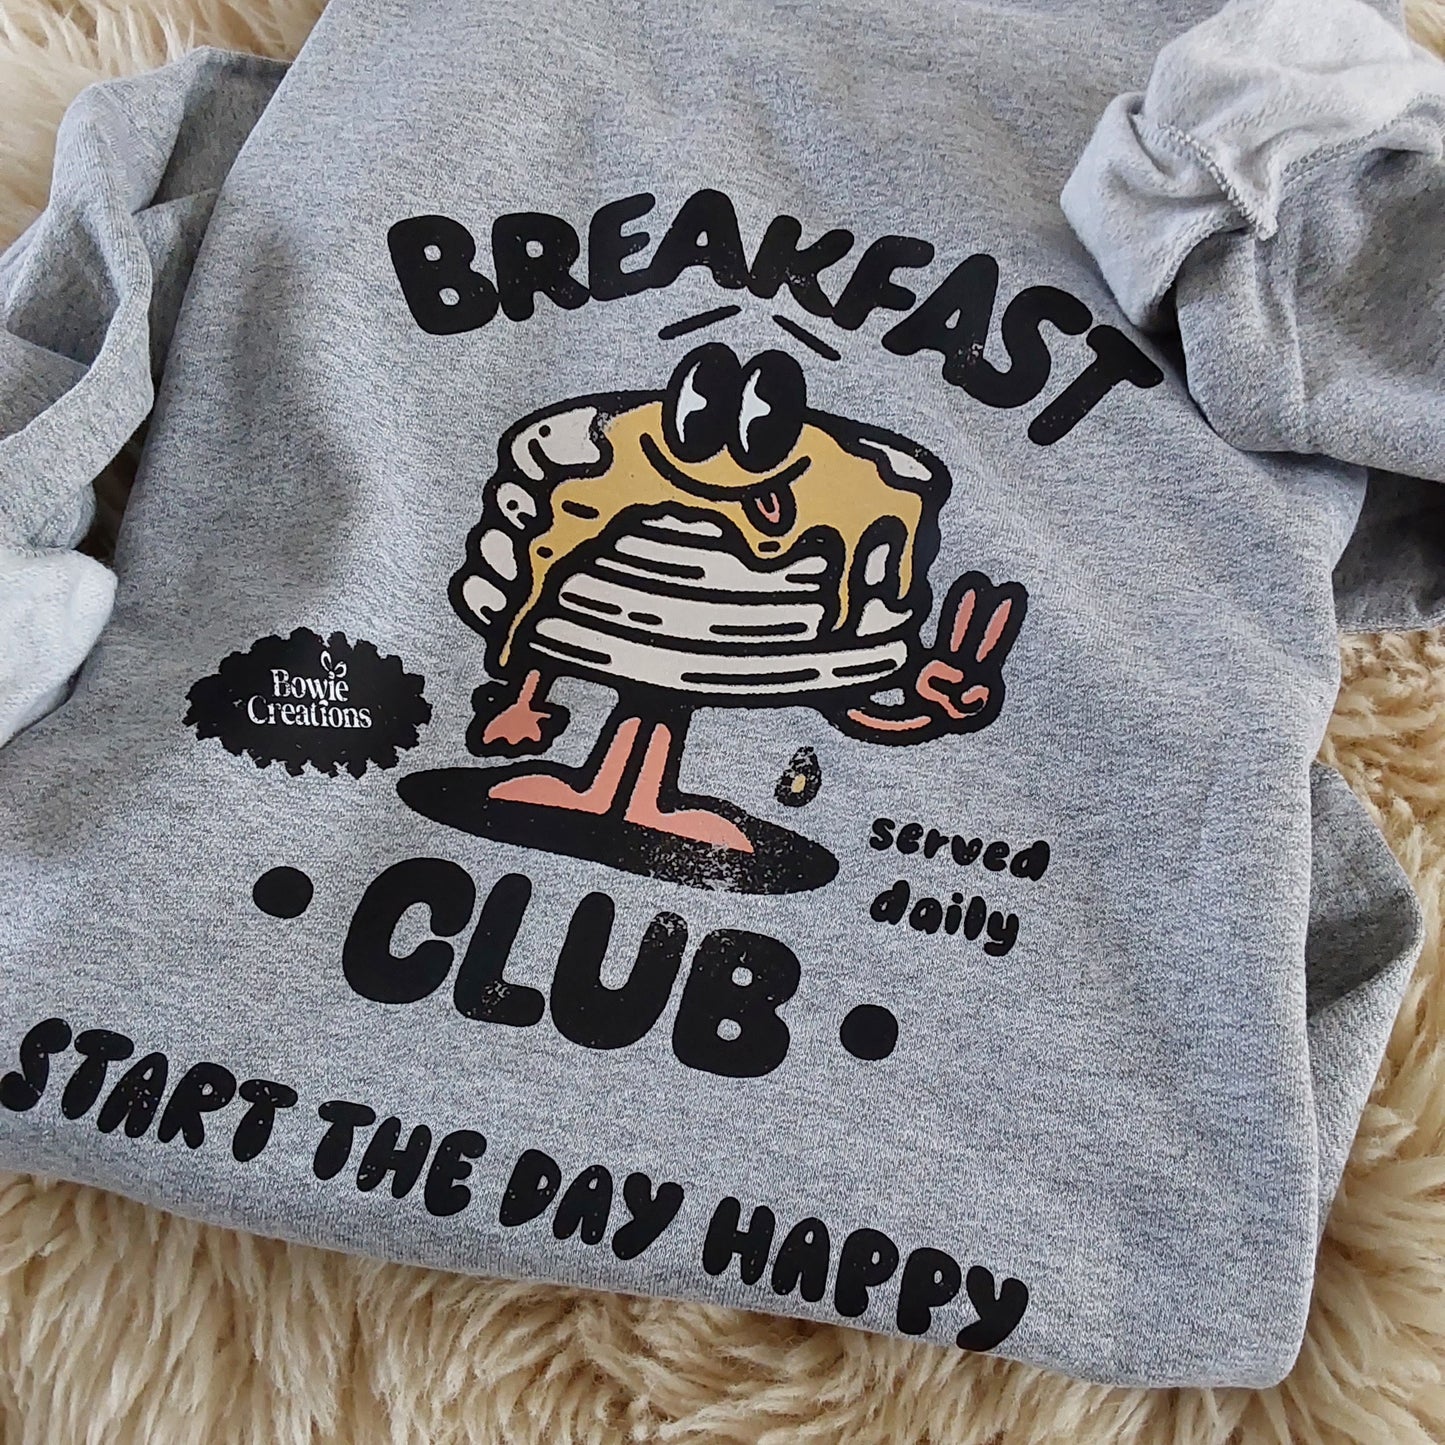 Breakfast club jumper